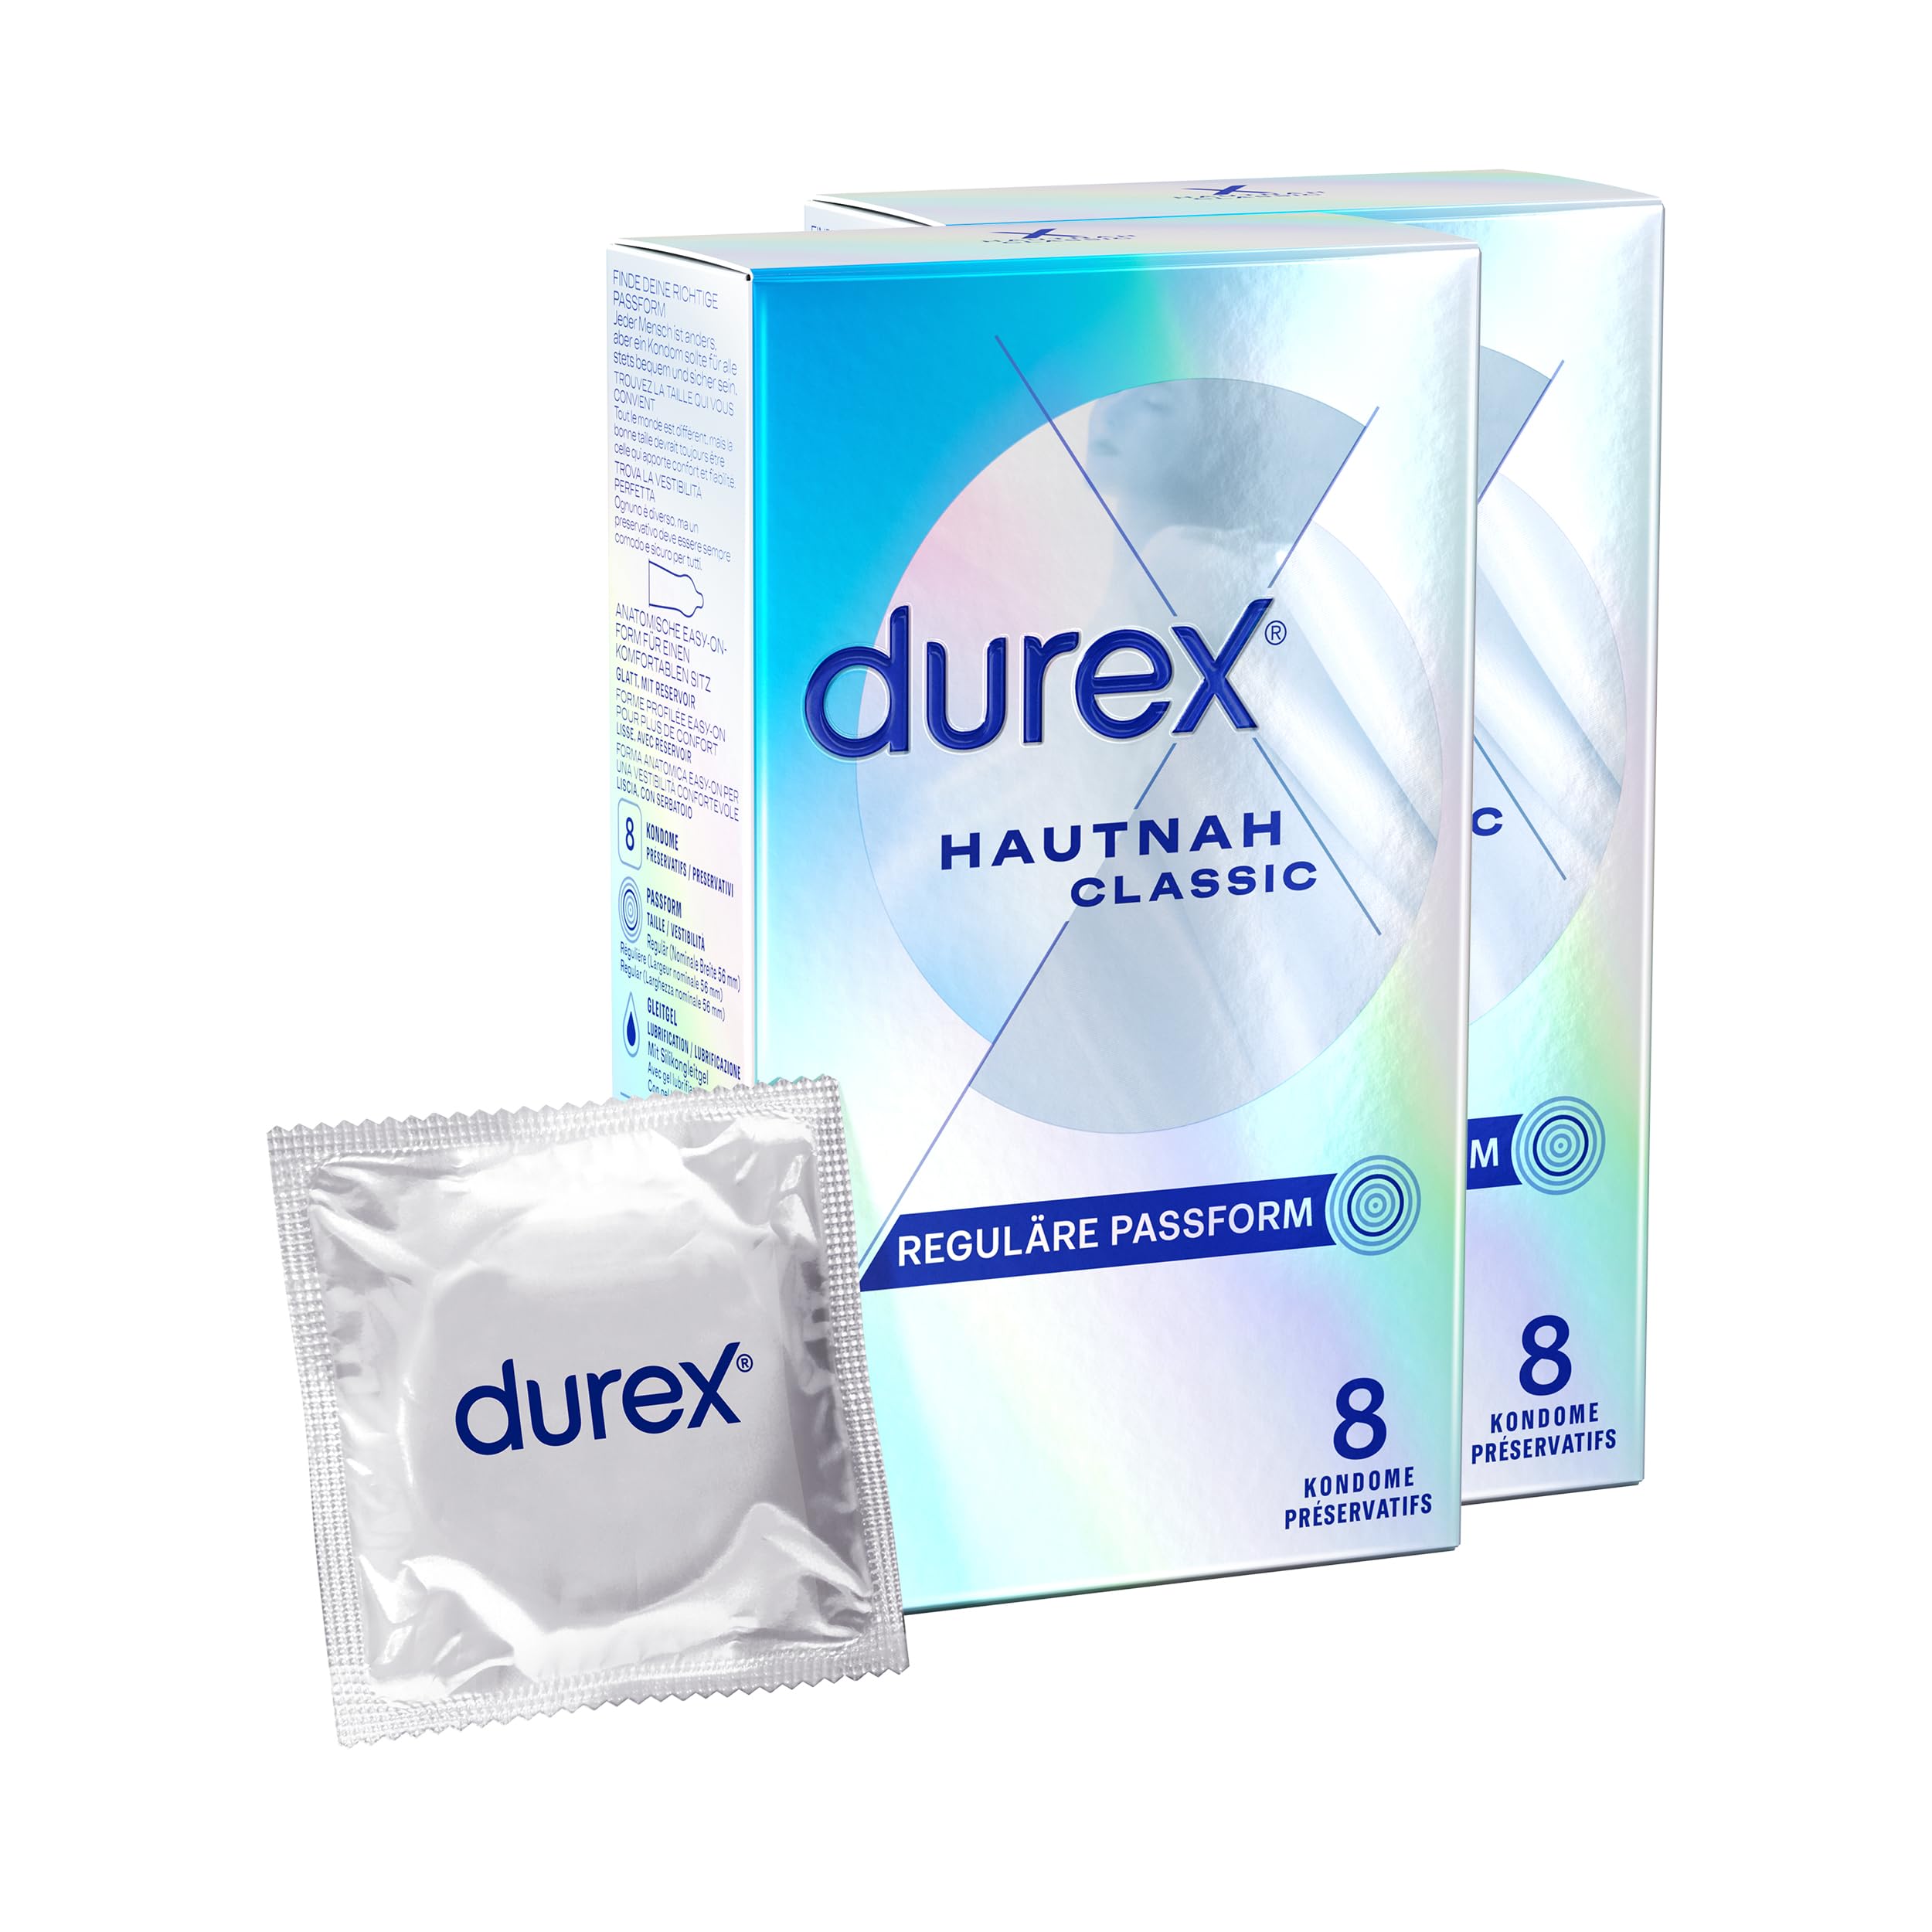 Durex Hautnah Classic Kondome – 16 Hauchzarte Kondome für intensives Empfinden und innige Zweisamkeit - 2 x 8 Stück